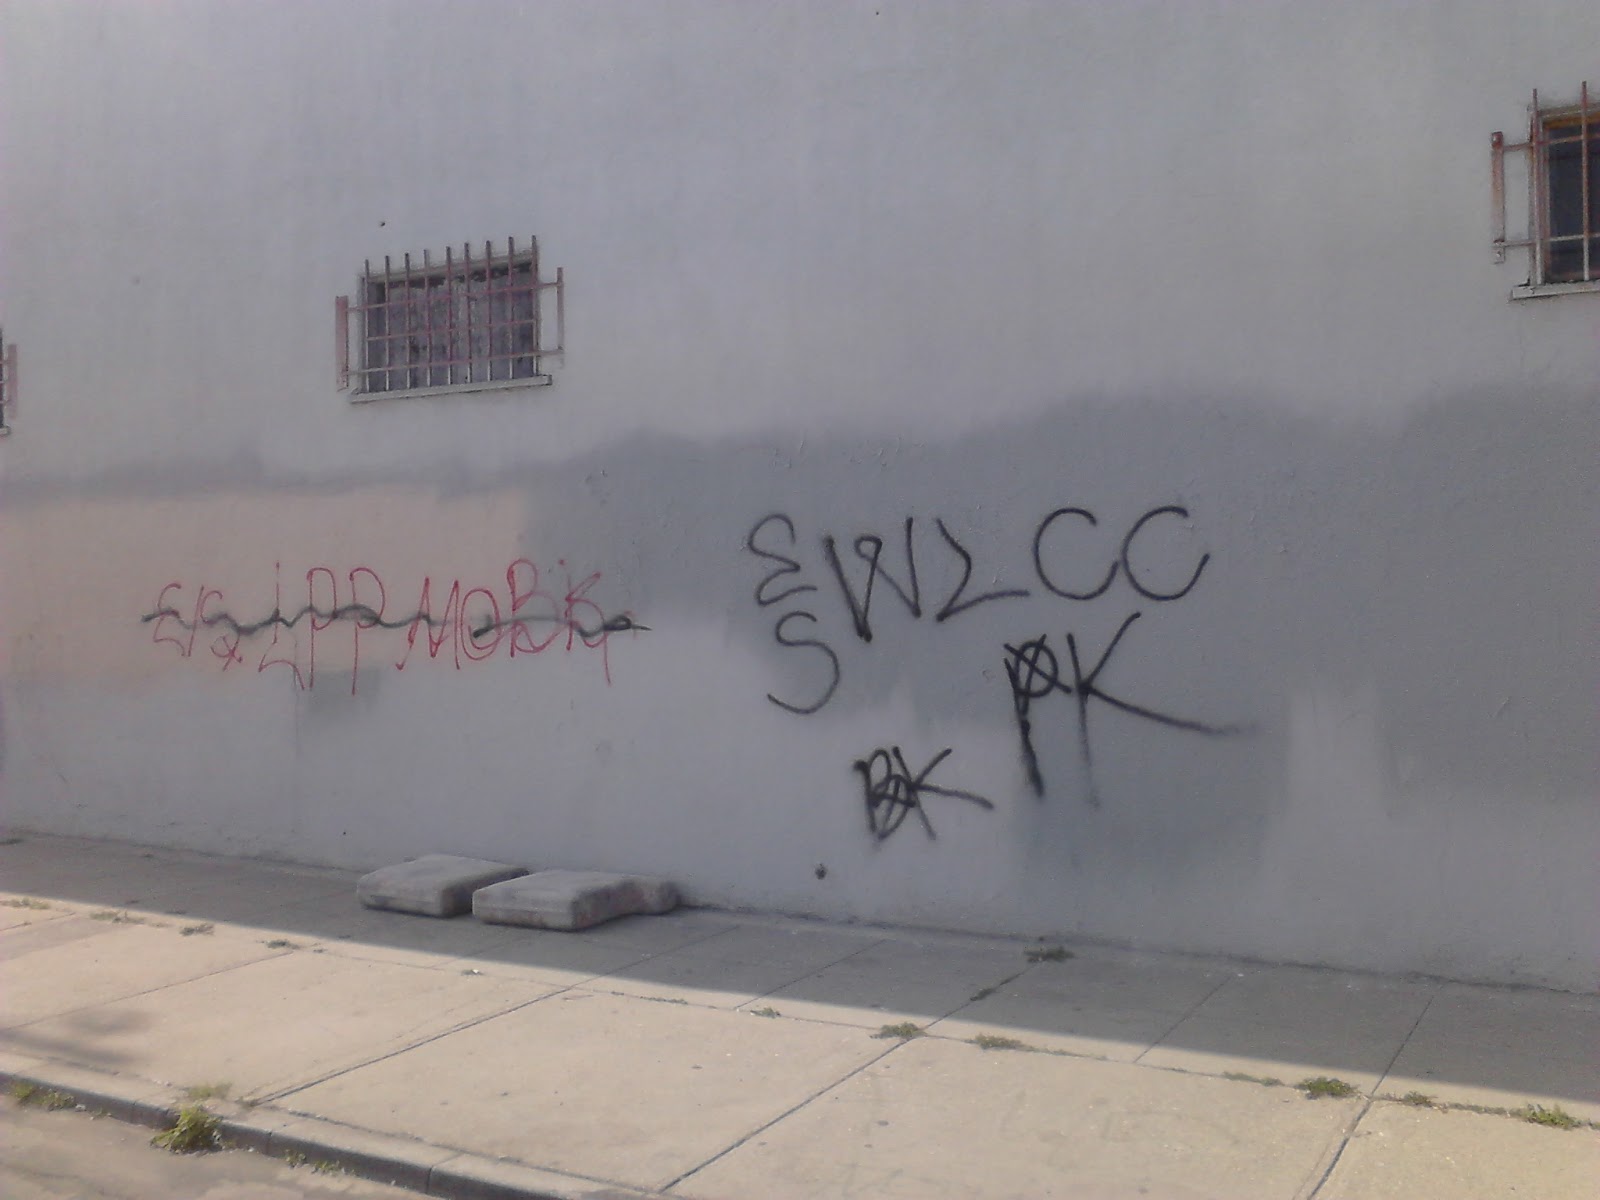 crip gangs graffiti: Ward lane compton crip